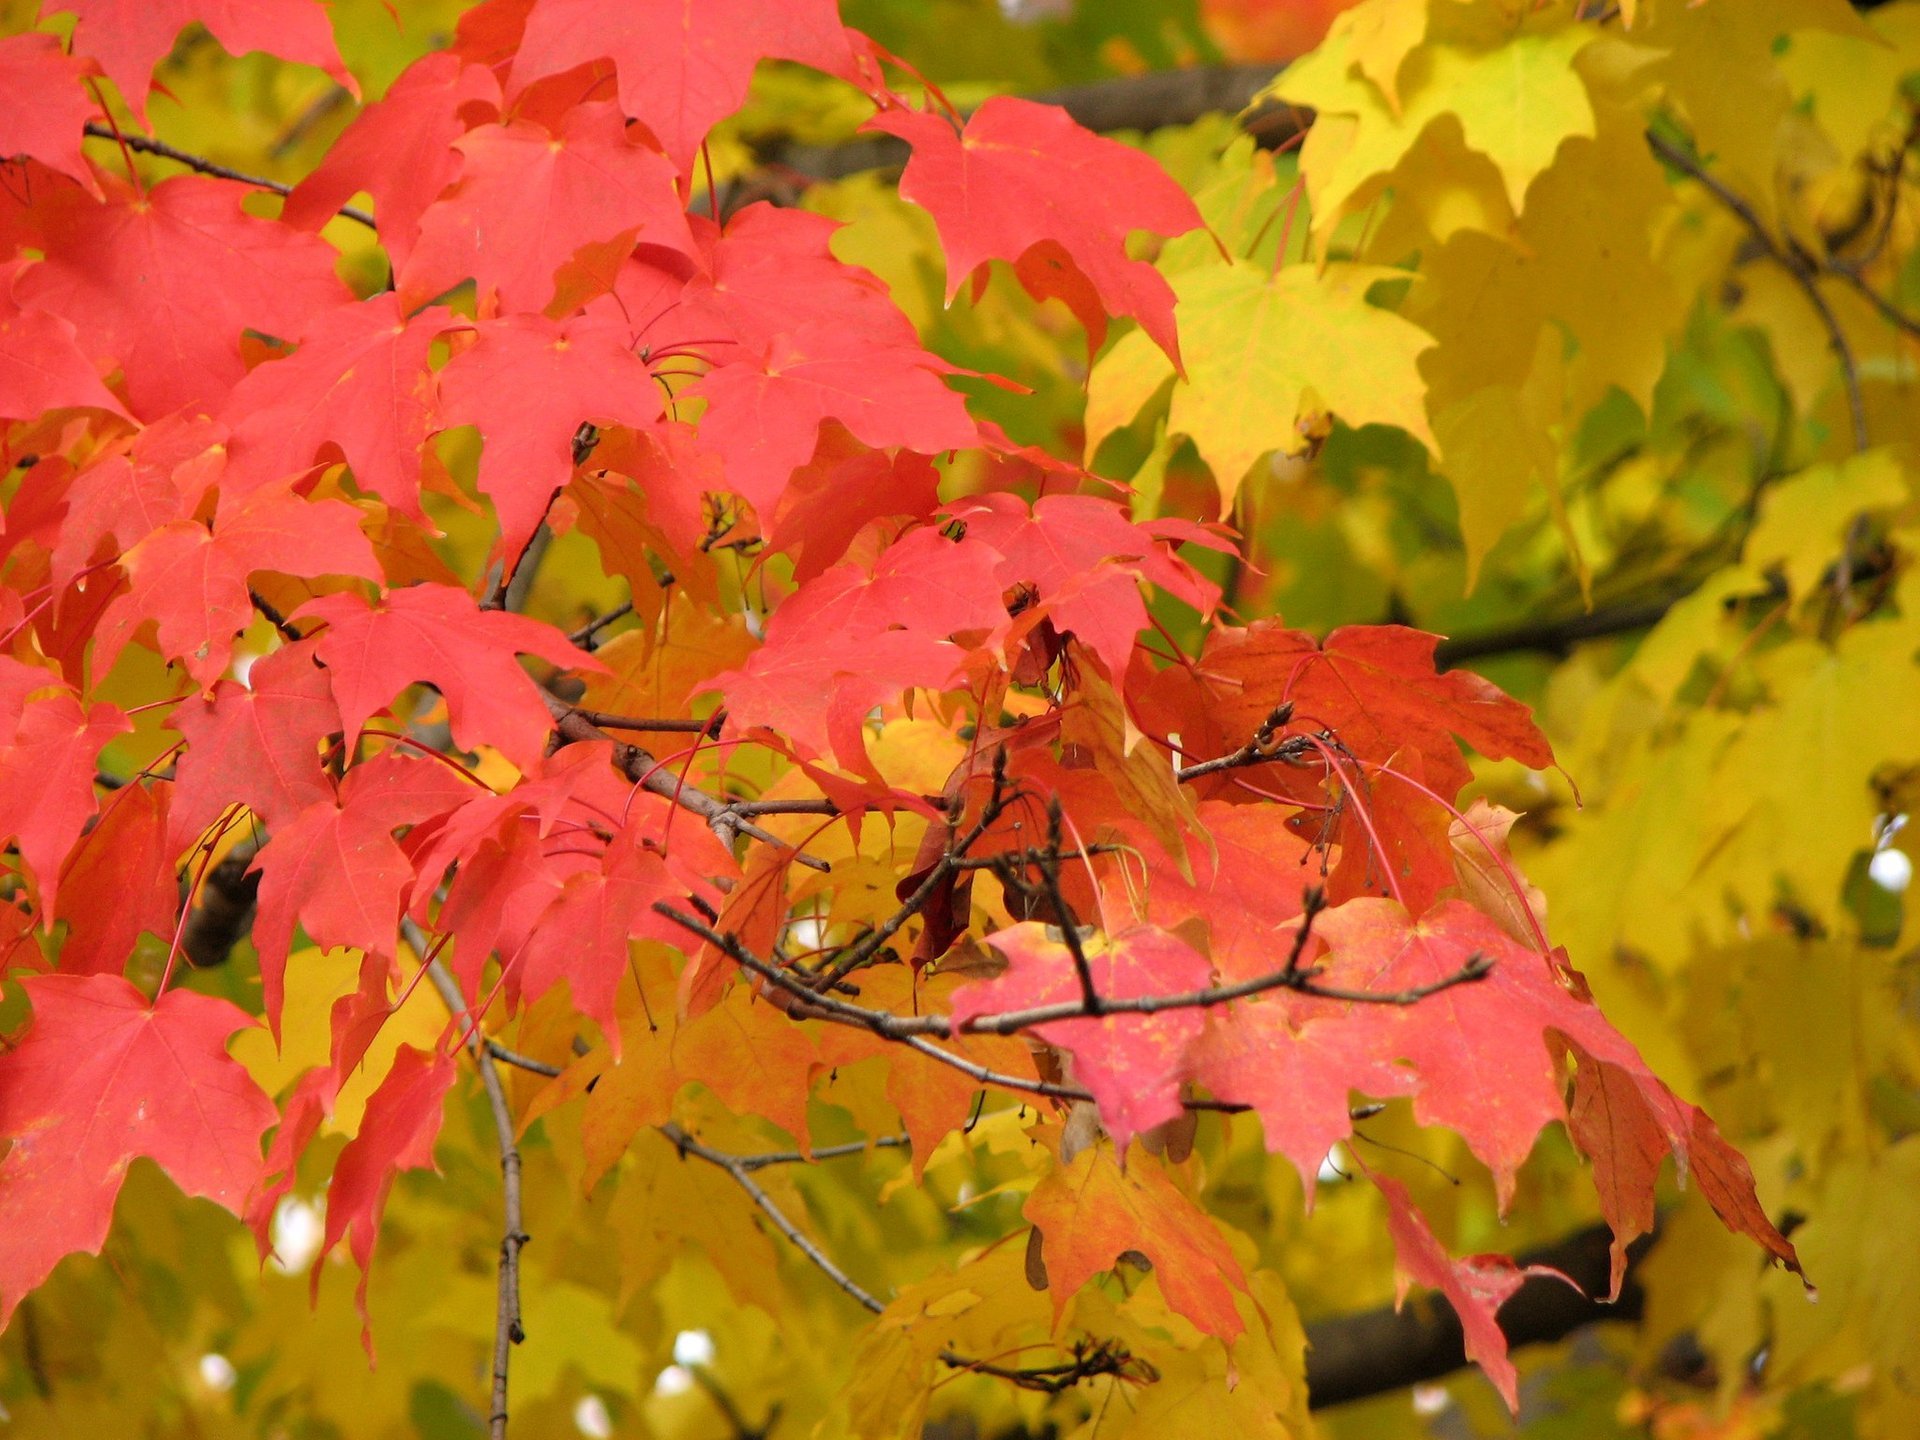 Minnesota Fall Colors